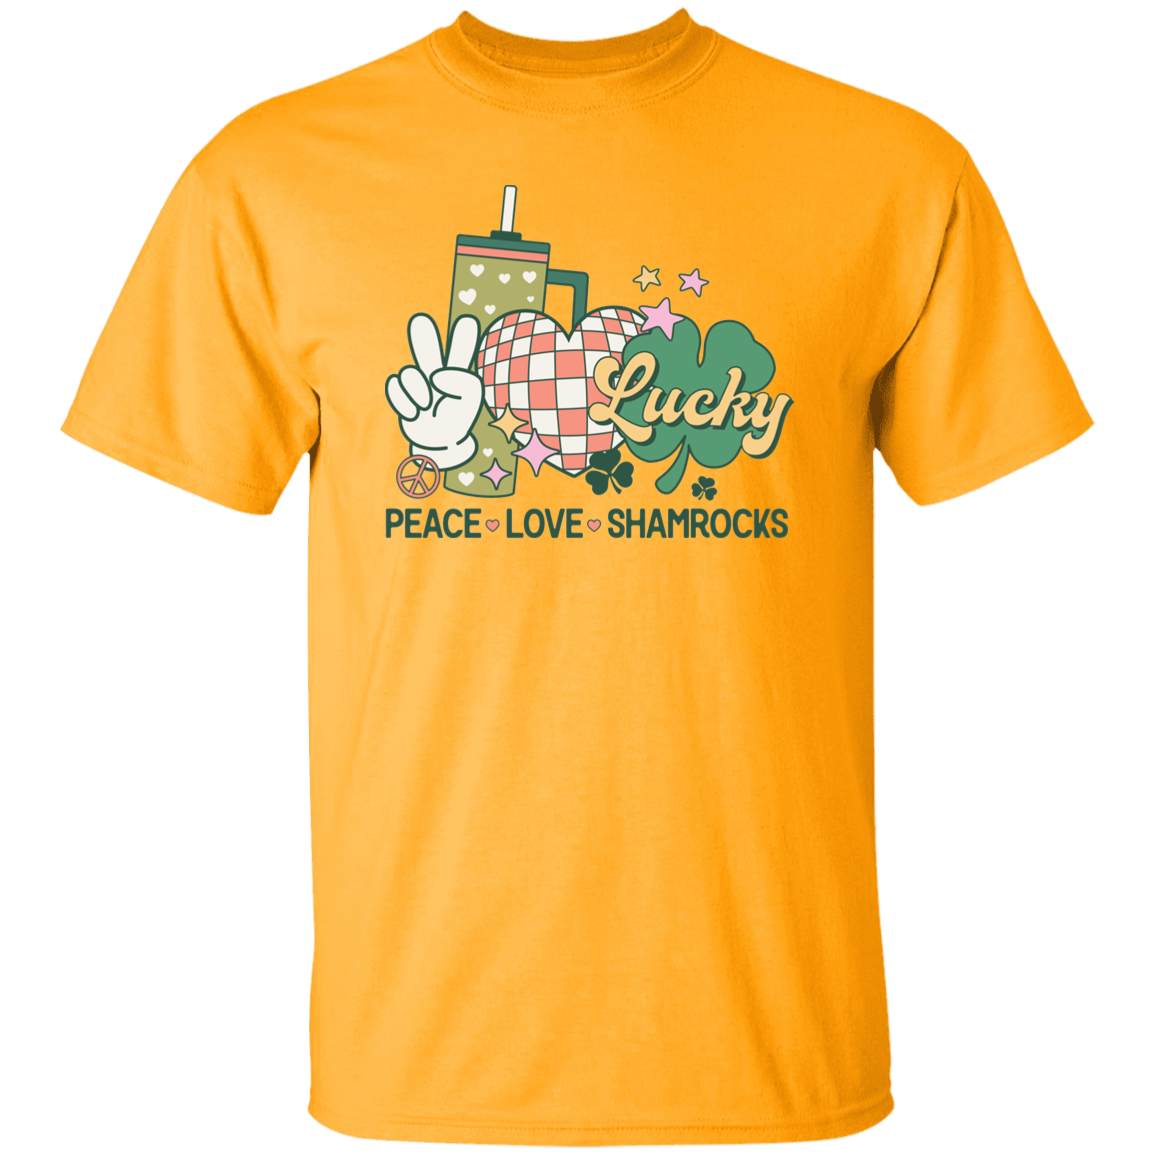 Paz, Amor y Trébol - Camiseta unisex